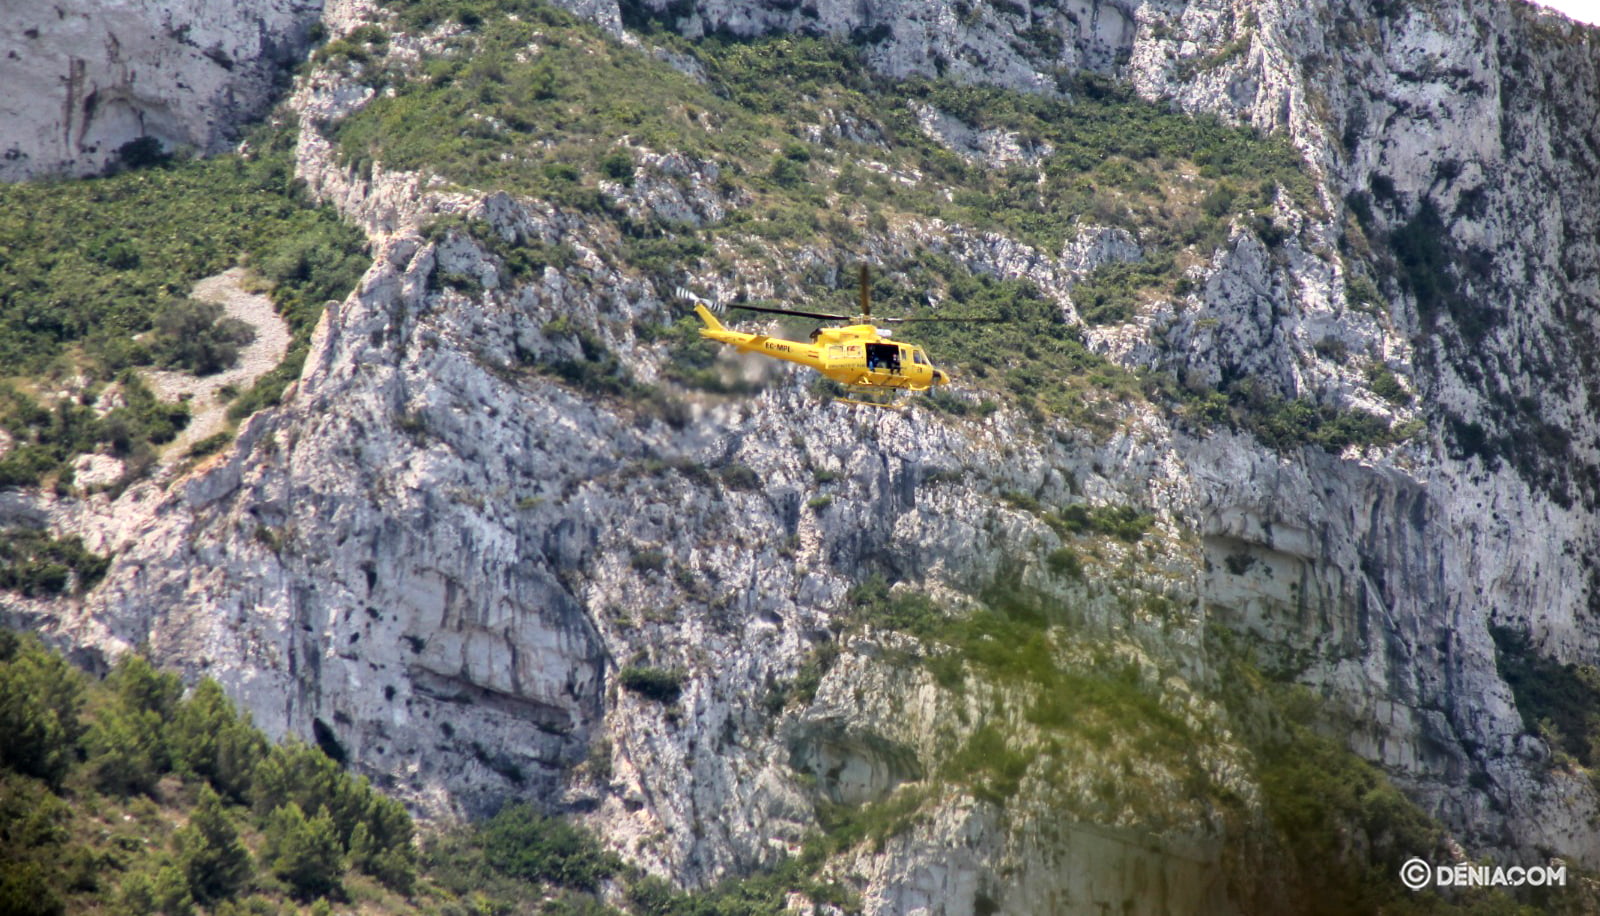 Rescate en helicóptero en el Montgó